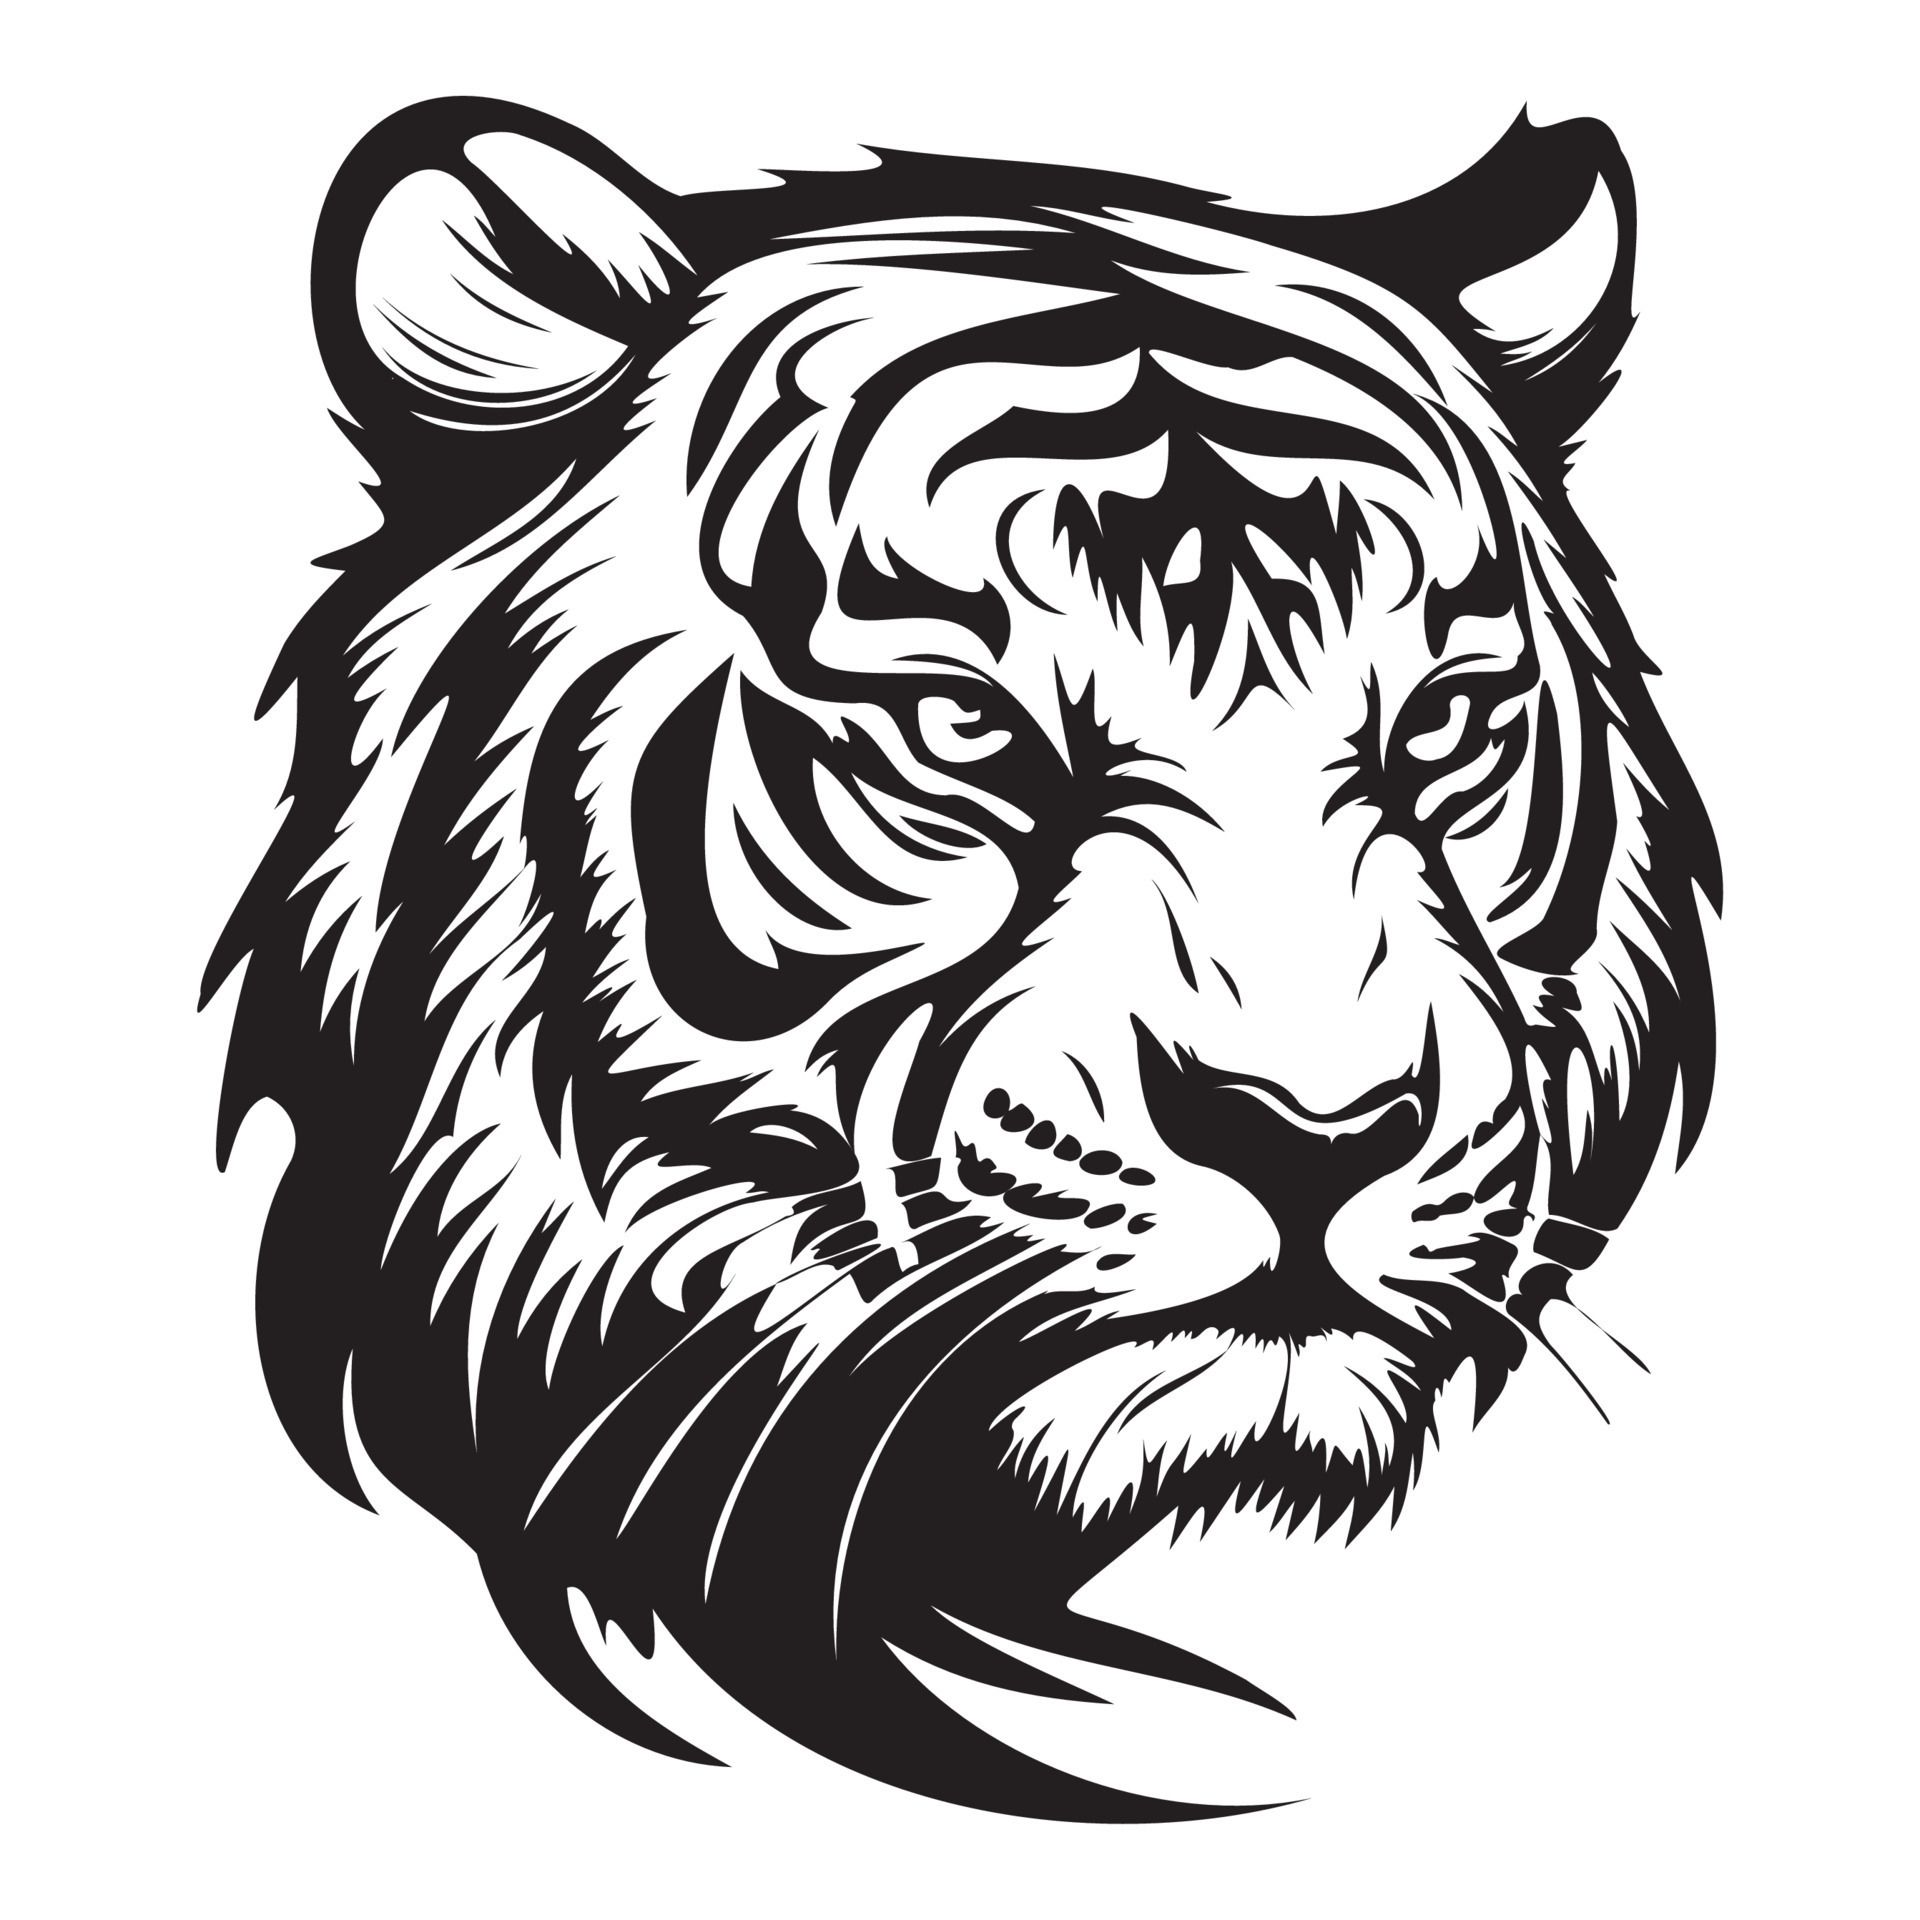  Weißer Tiger Hintergrundbild 1920x1920. Tiger Gesicht, Silhouetten Tiger Gesicht SVG, schwarz und Weiß Tiger Vektor 22666029 Vektor Kunst bei Vecteezy